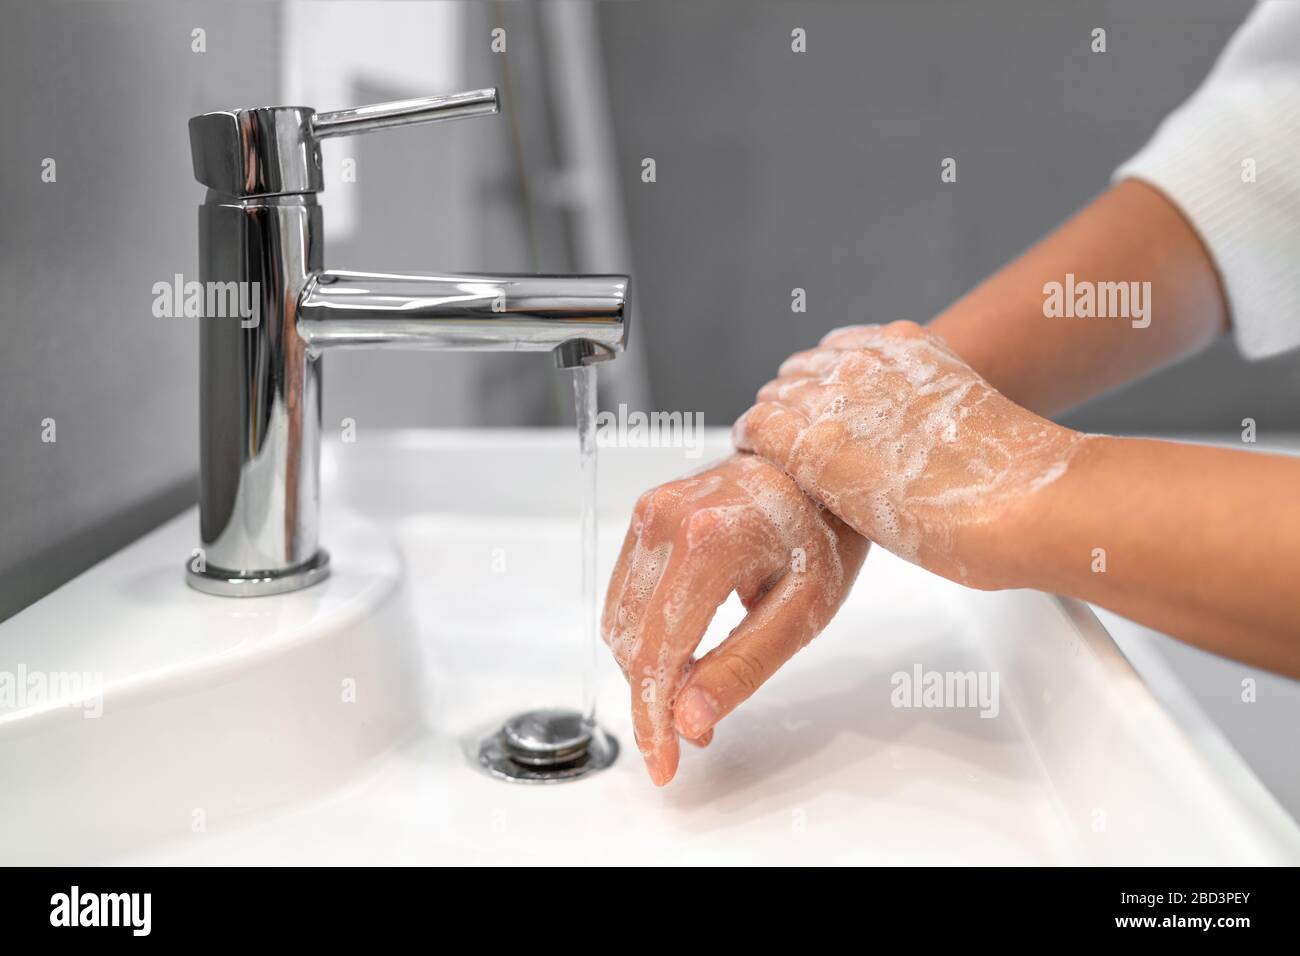 Händewaschen Seife reibende Handgelenke Handwäsche Schritt Frau Spülen in Wasser im Bad Wasserhahn Waschbecken. Waschen Sie die Hände für die COVID-19-Streuprävention. Ausbruch einer Coronavirus-Pandemie. Stockfoto